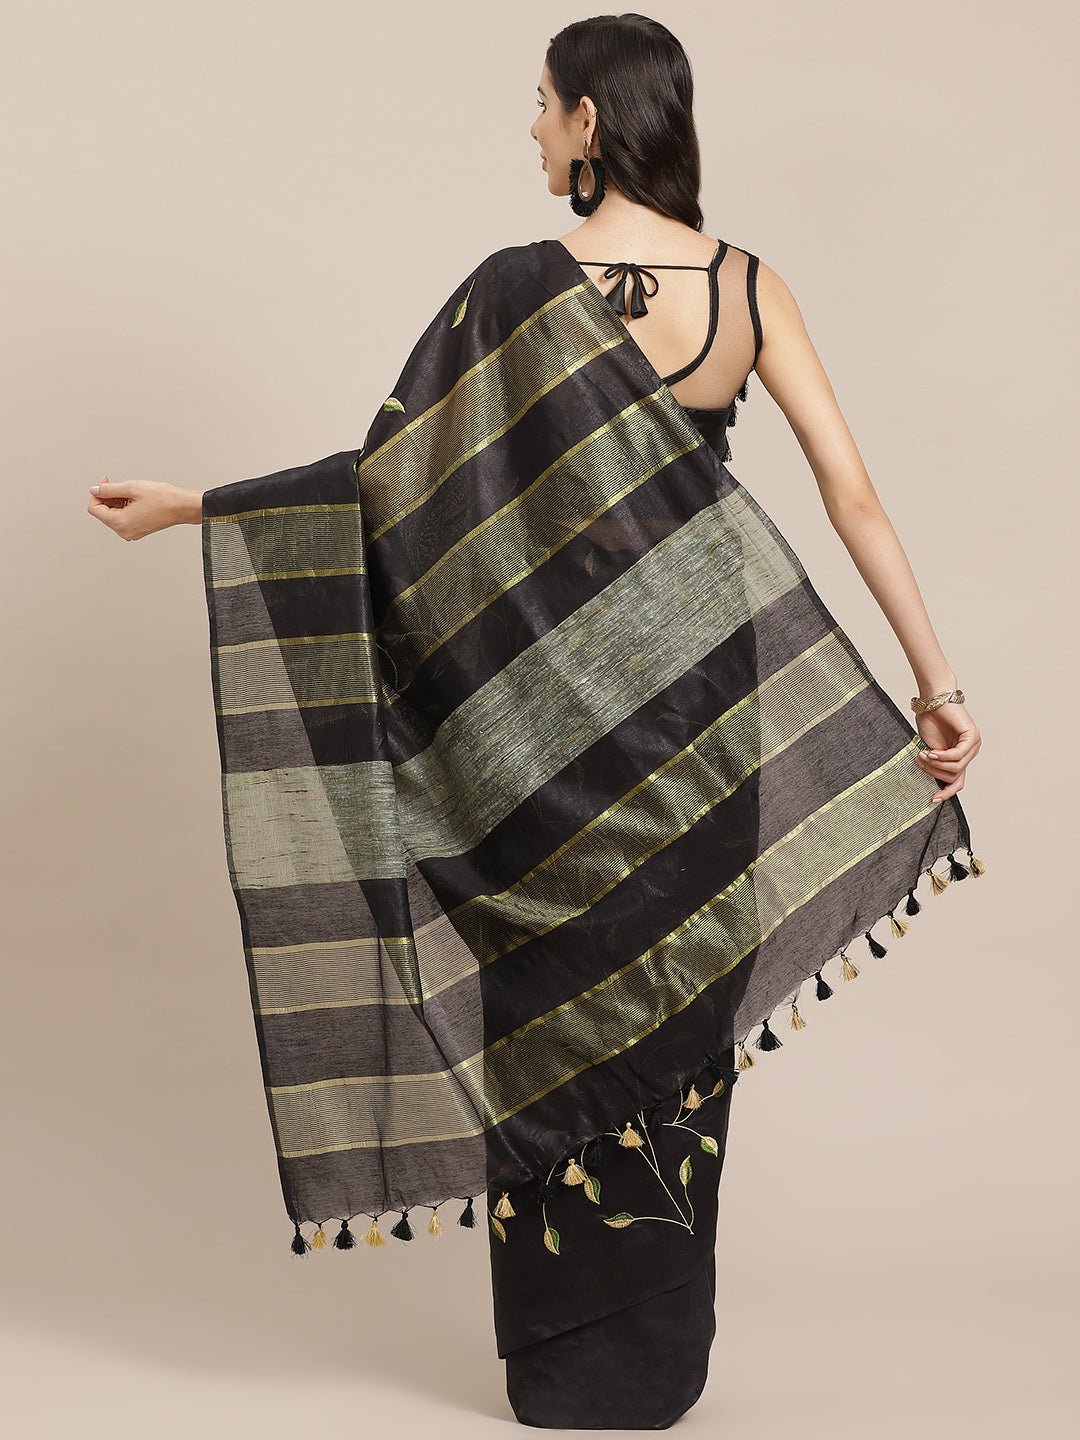 Black and Gold, Kalakari India Bhagalpuri Silk Blend Woven Design Saree with Blouse ALBGSA0143 - Kalakari India